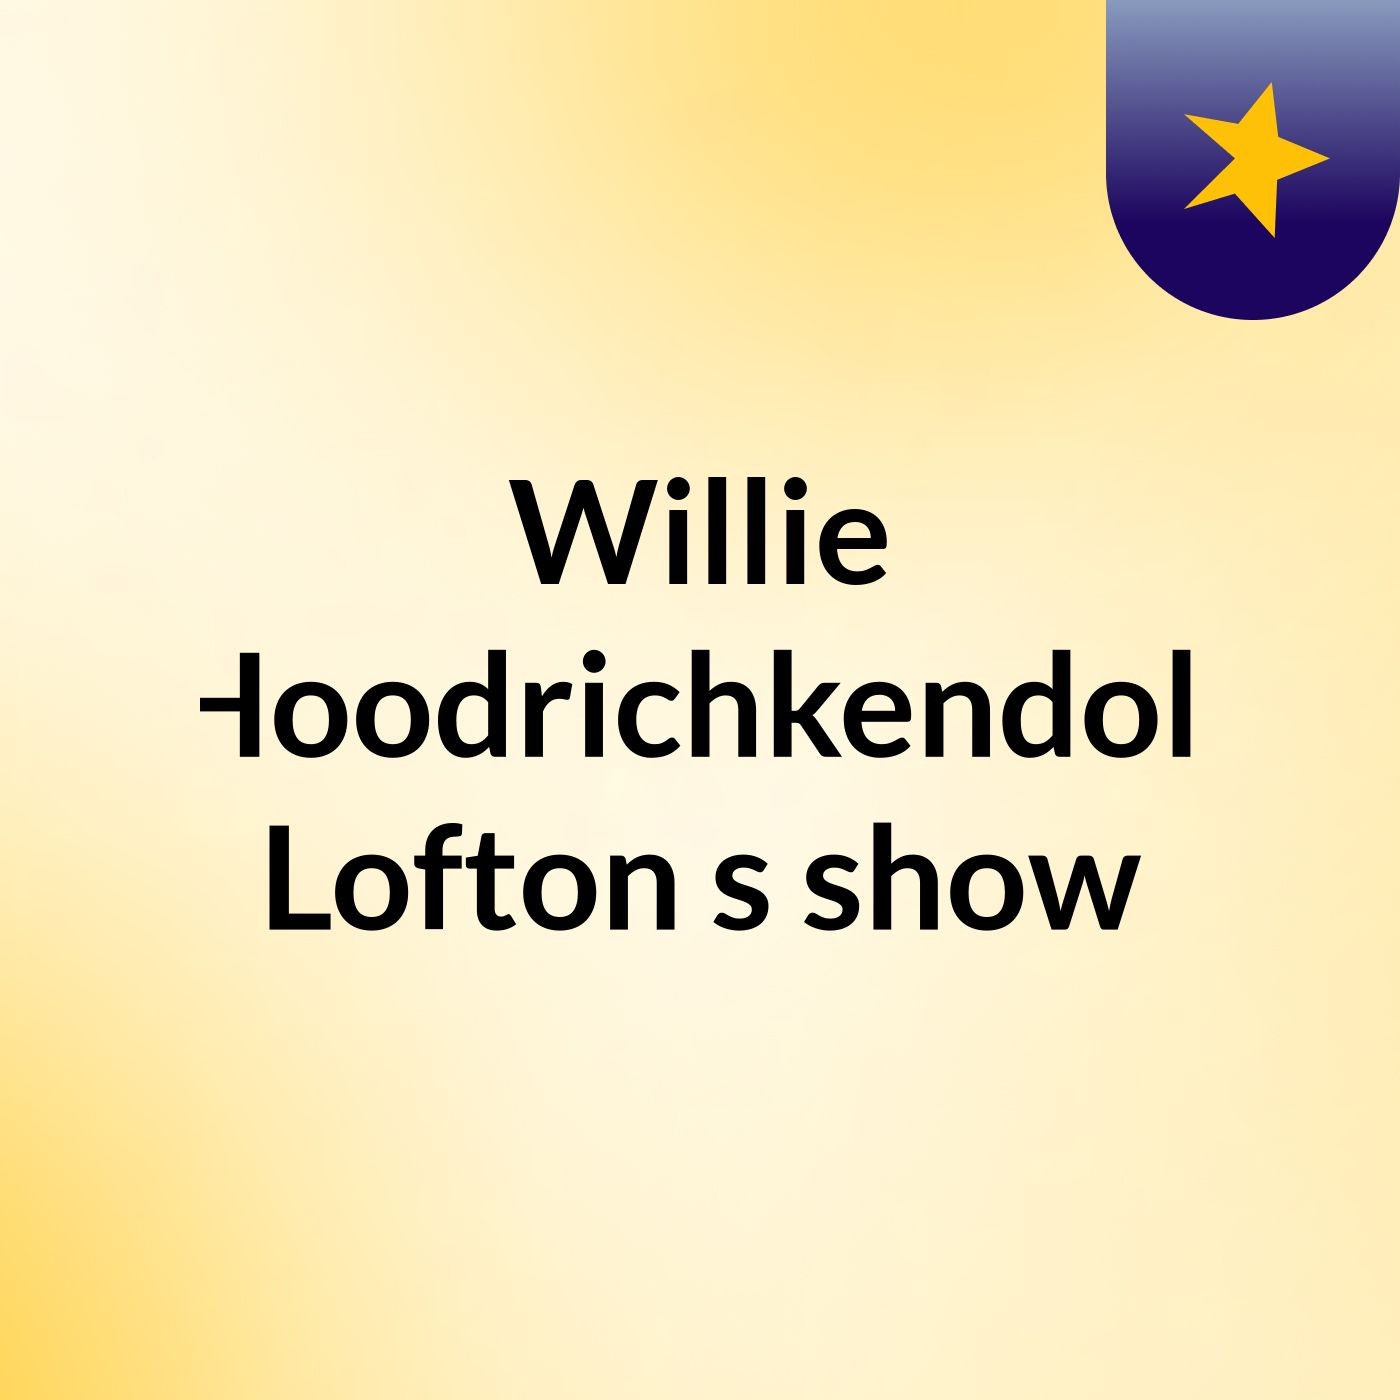 Willie Hoodrichkendoll Lofton's show